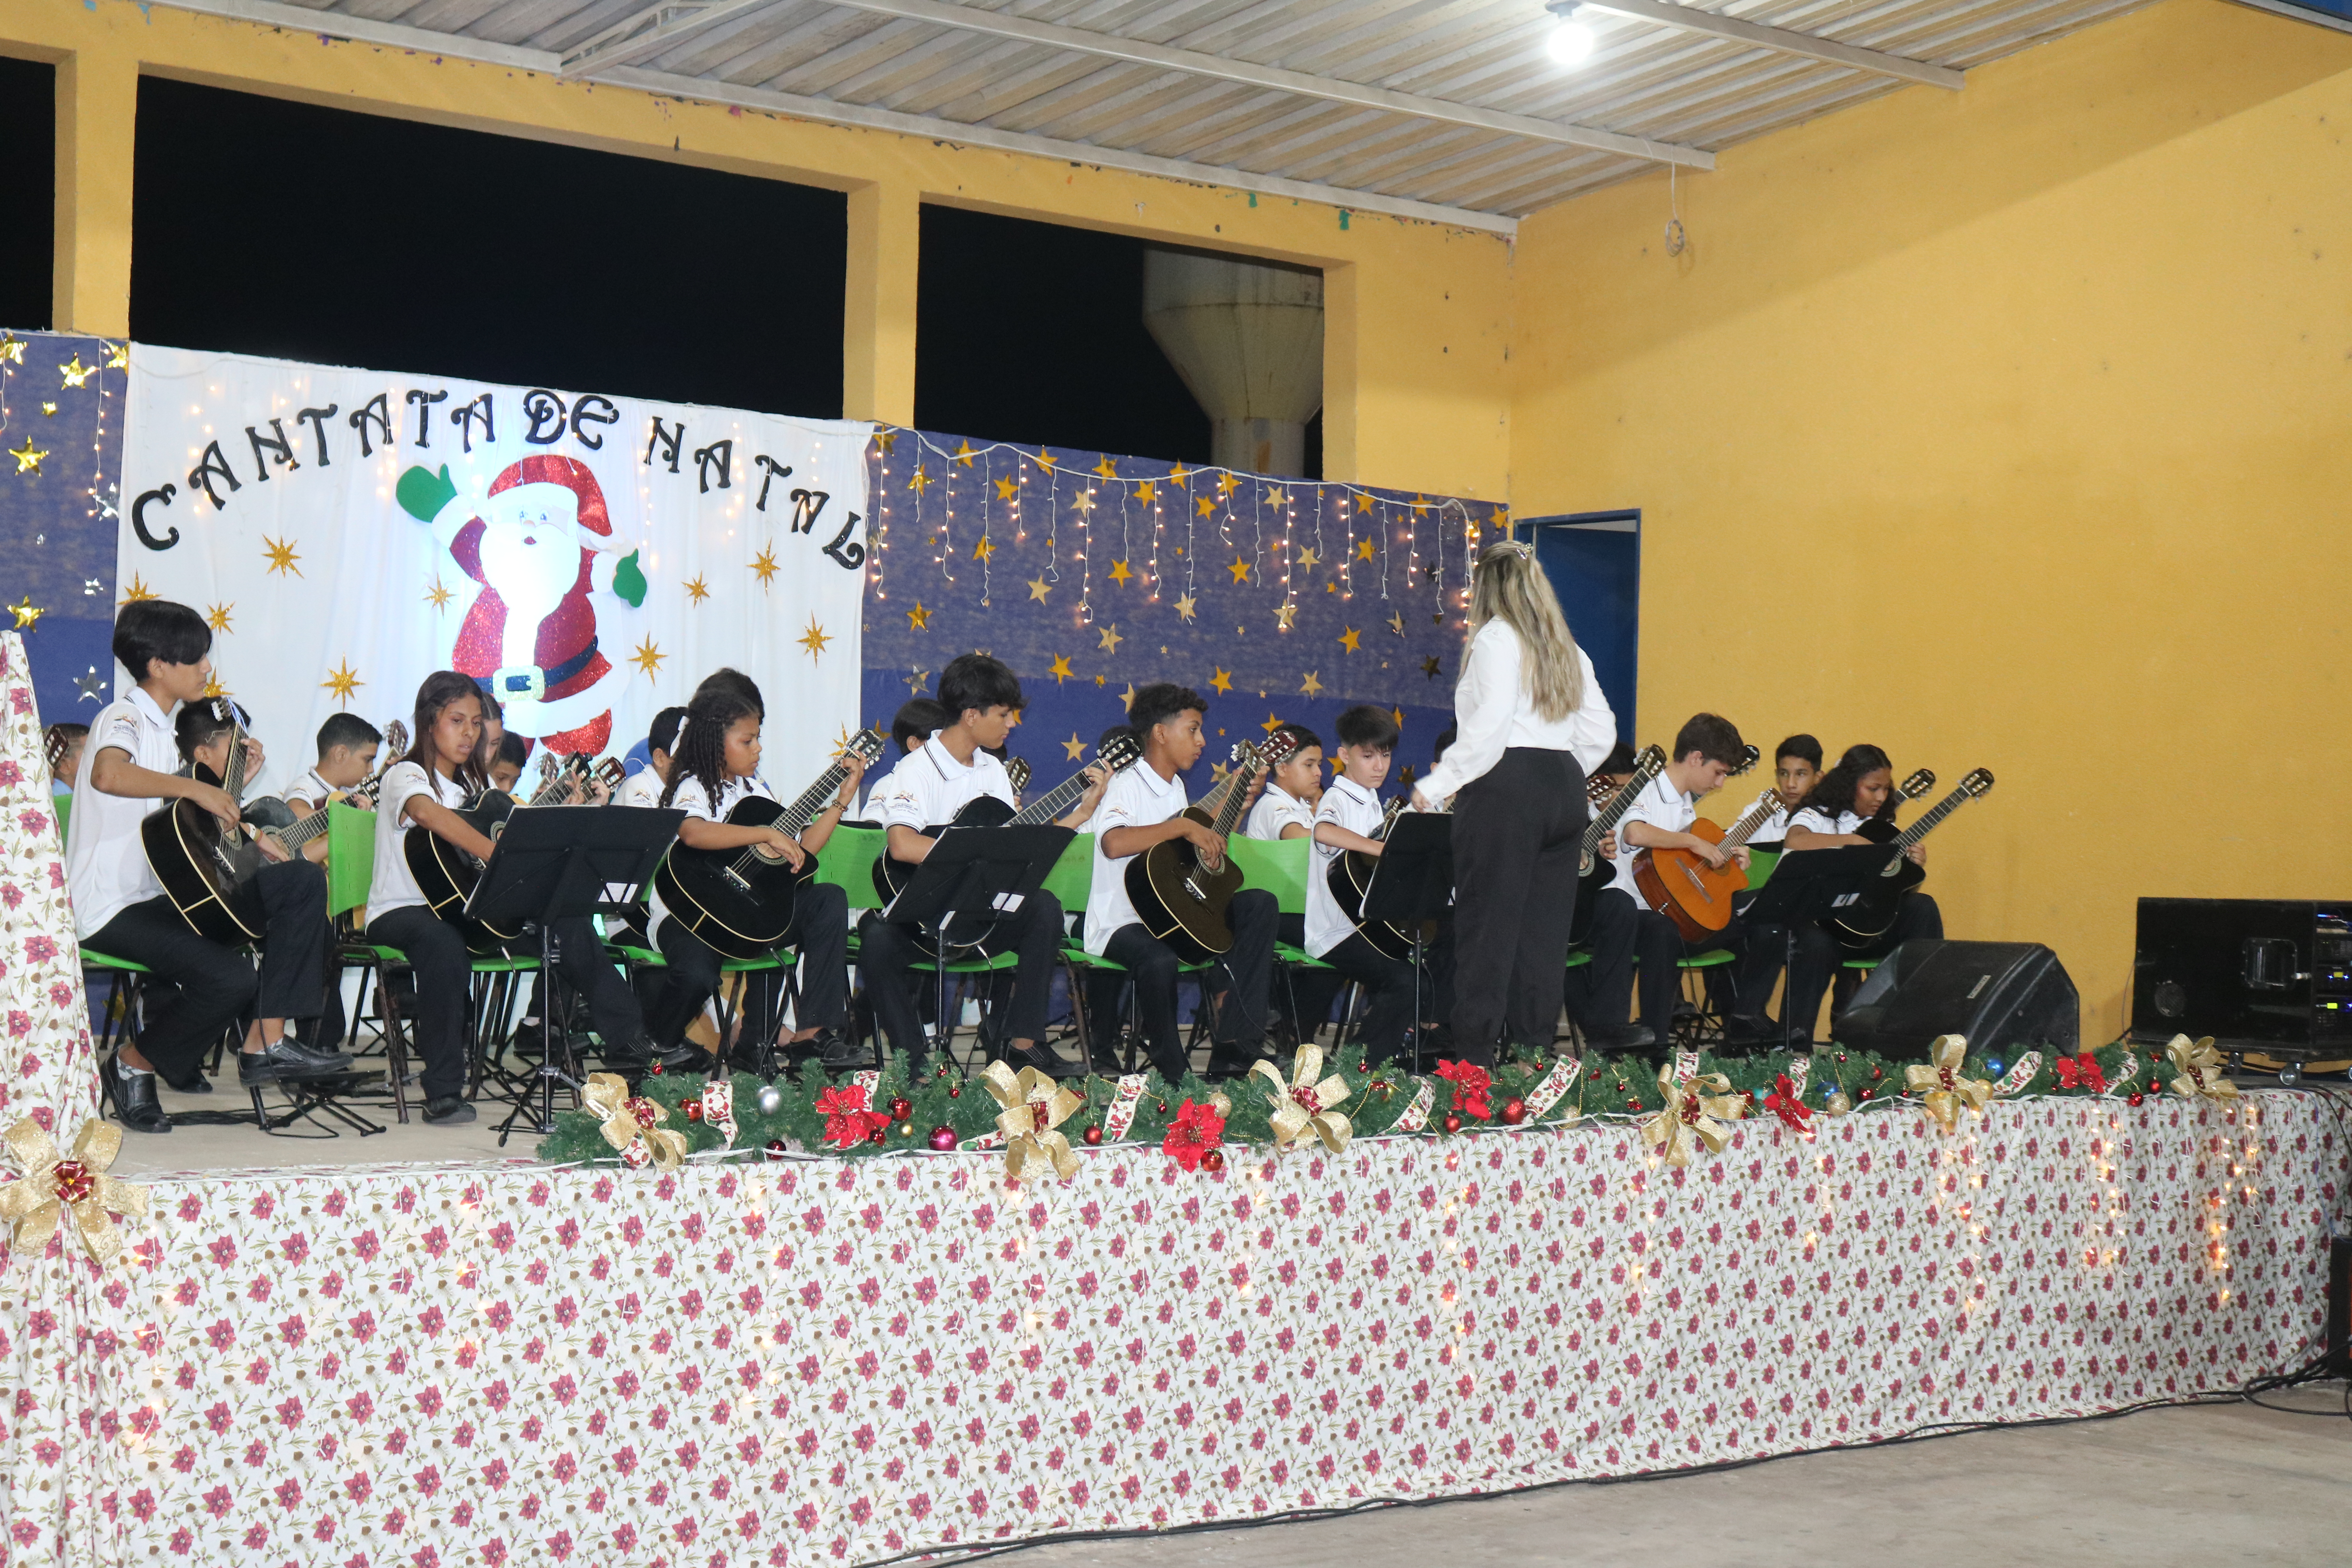 Cantata de Natal em Porto Murtinho emociona público e supera expectativas